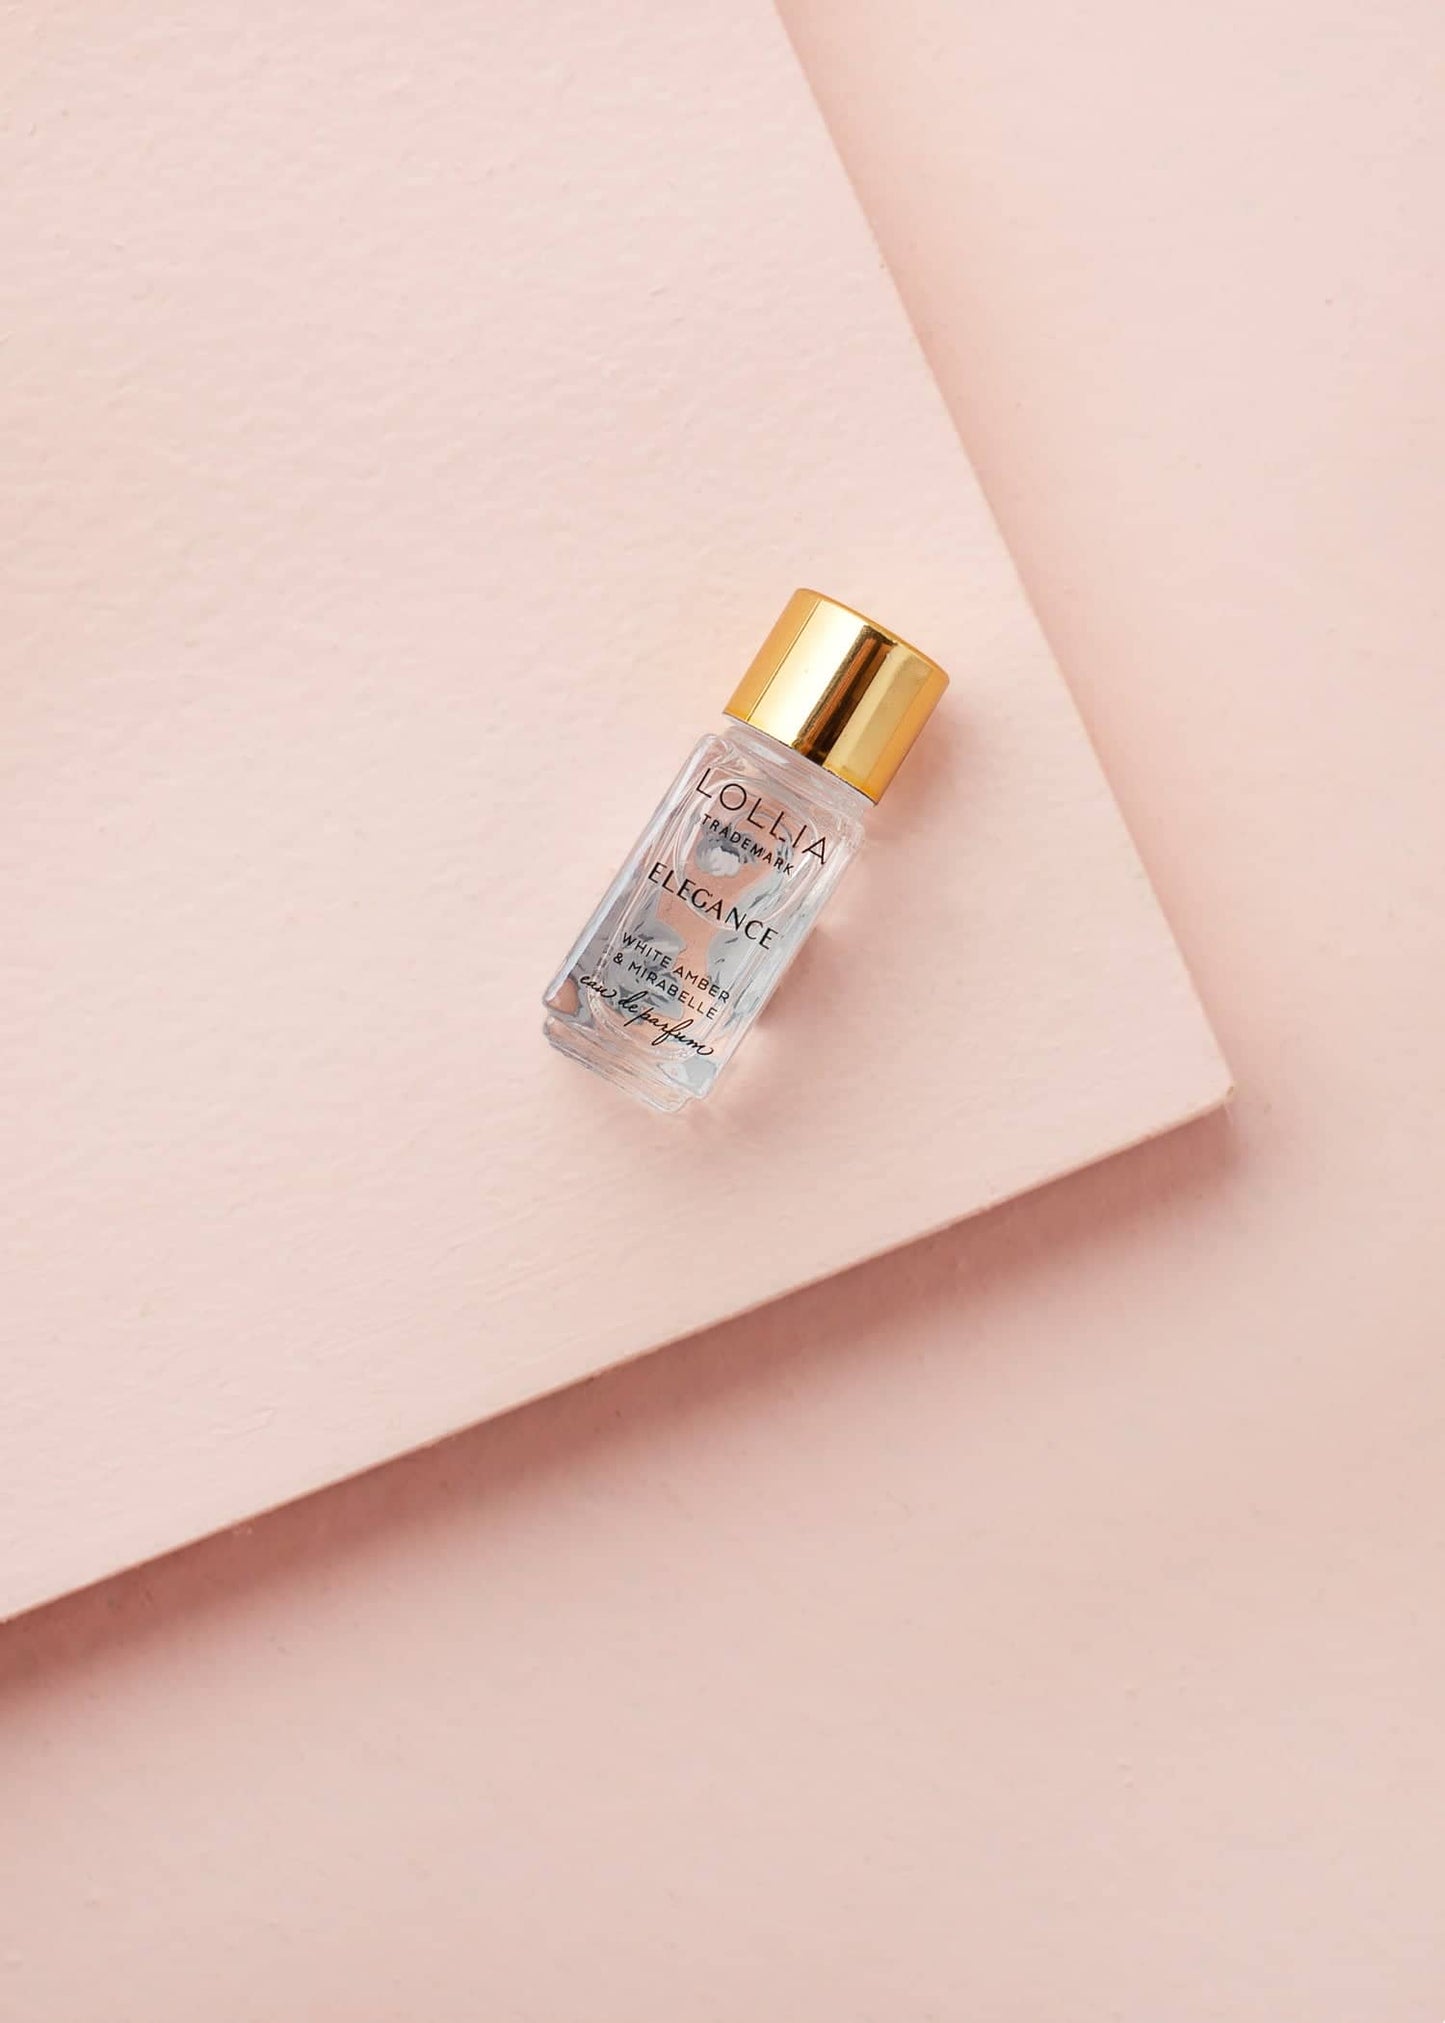 Elegance - Little Luxe Eau de Parfum